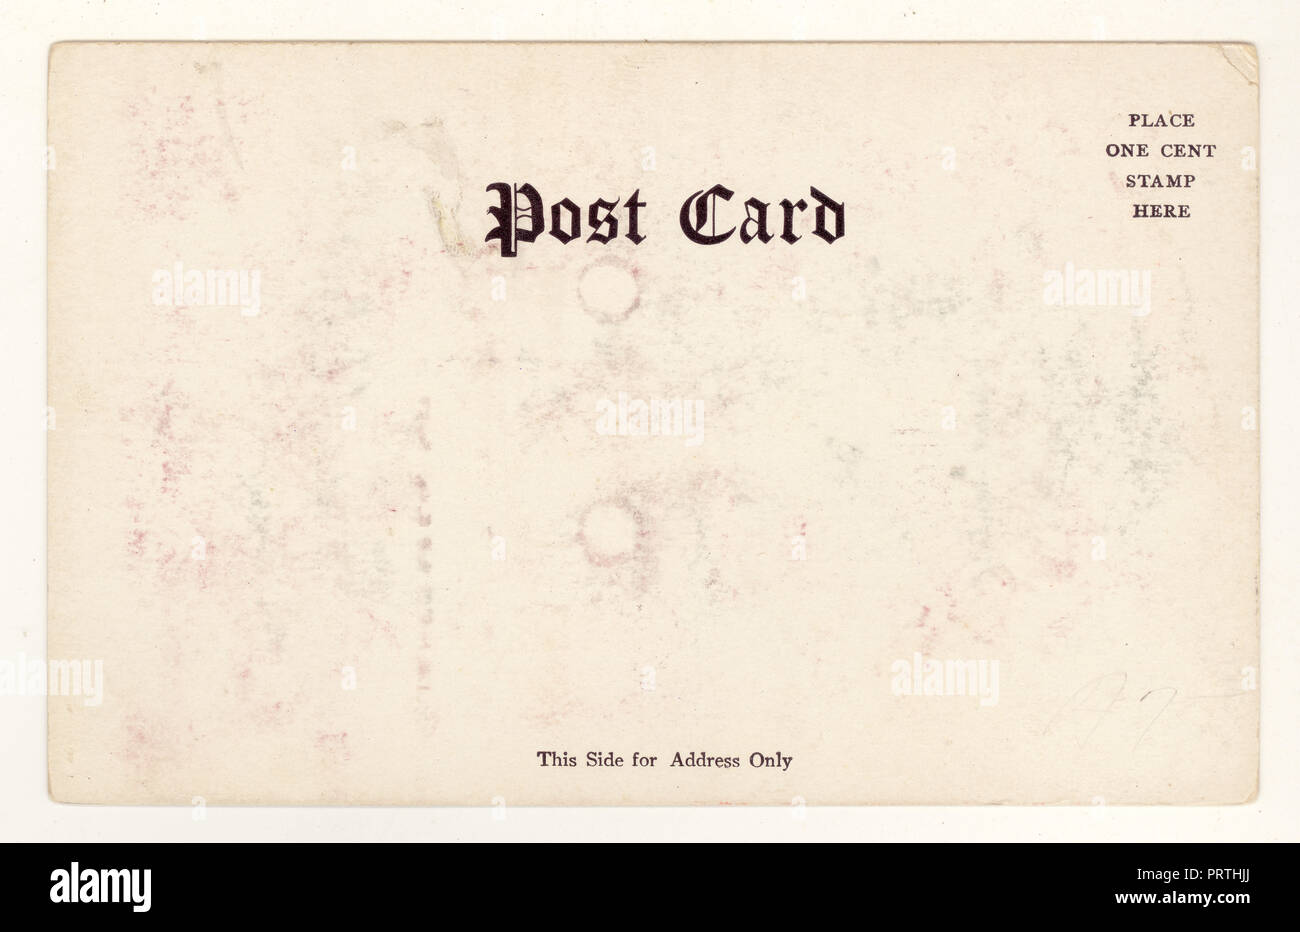 Rückseite der Edwardianischen Postkarte, datiert 1905, nicht postal benutzt, ein 1 Cent Briefkasten, USA Stockfoto